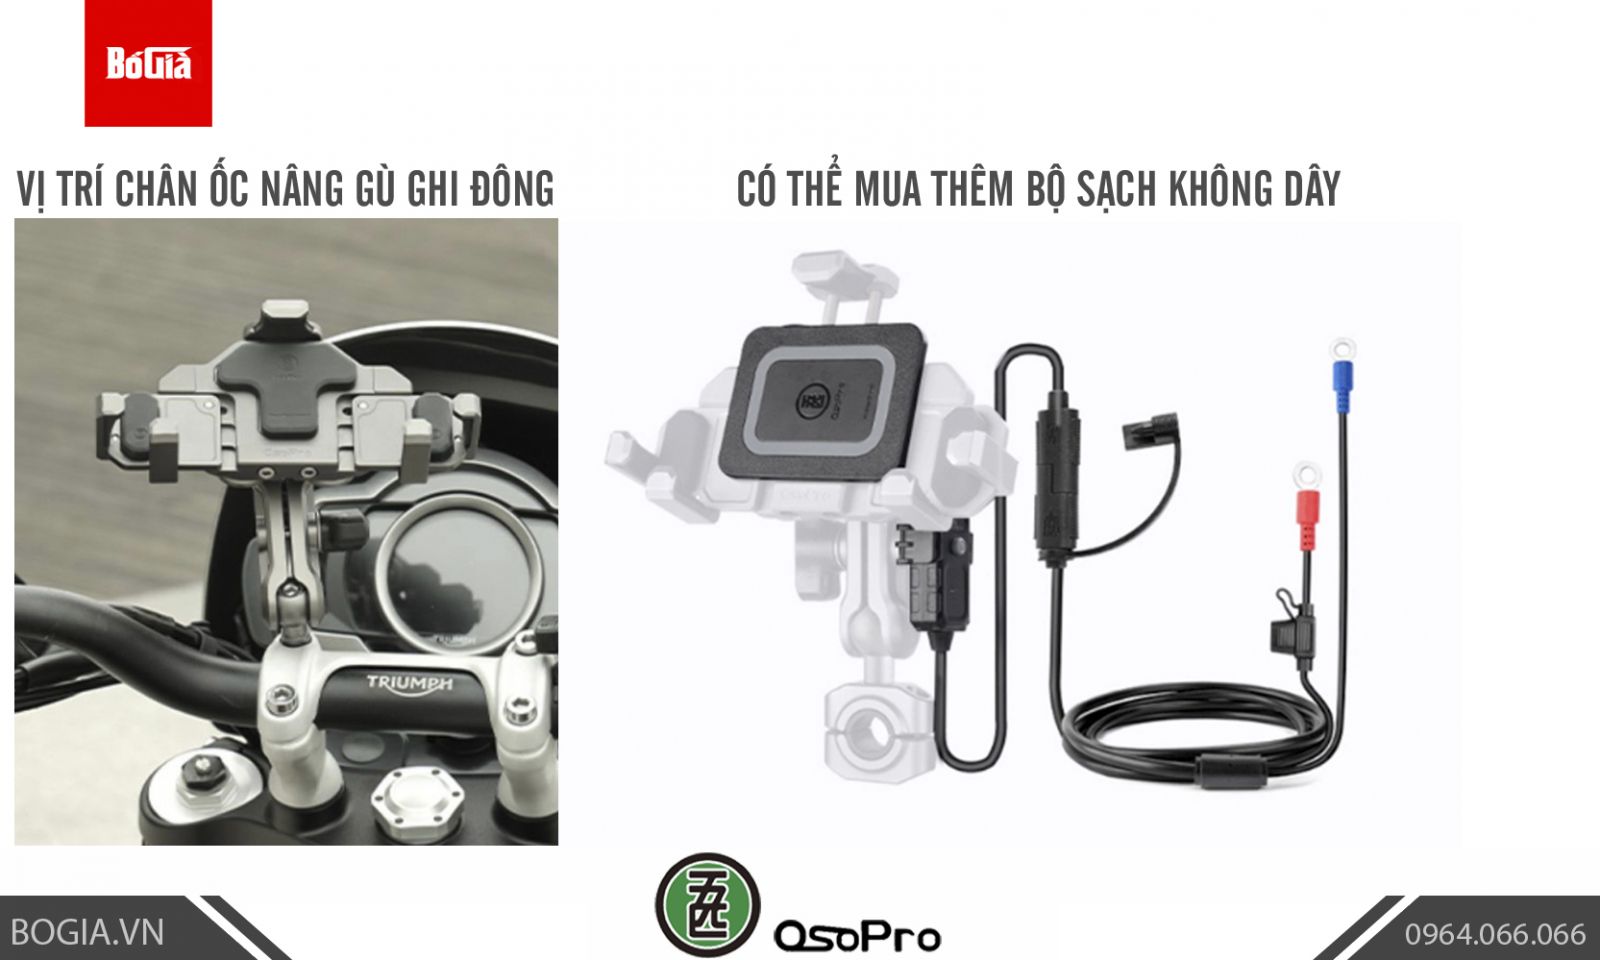 Vị trí lắp giá đỡ điện thoại OsoPro nhôm và bộ phụ kiện sạc không dây